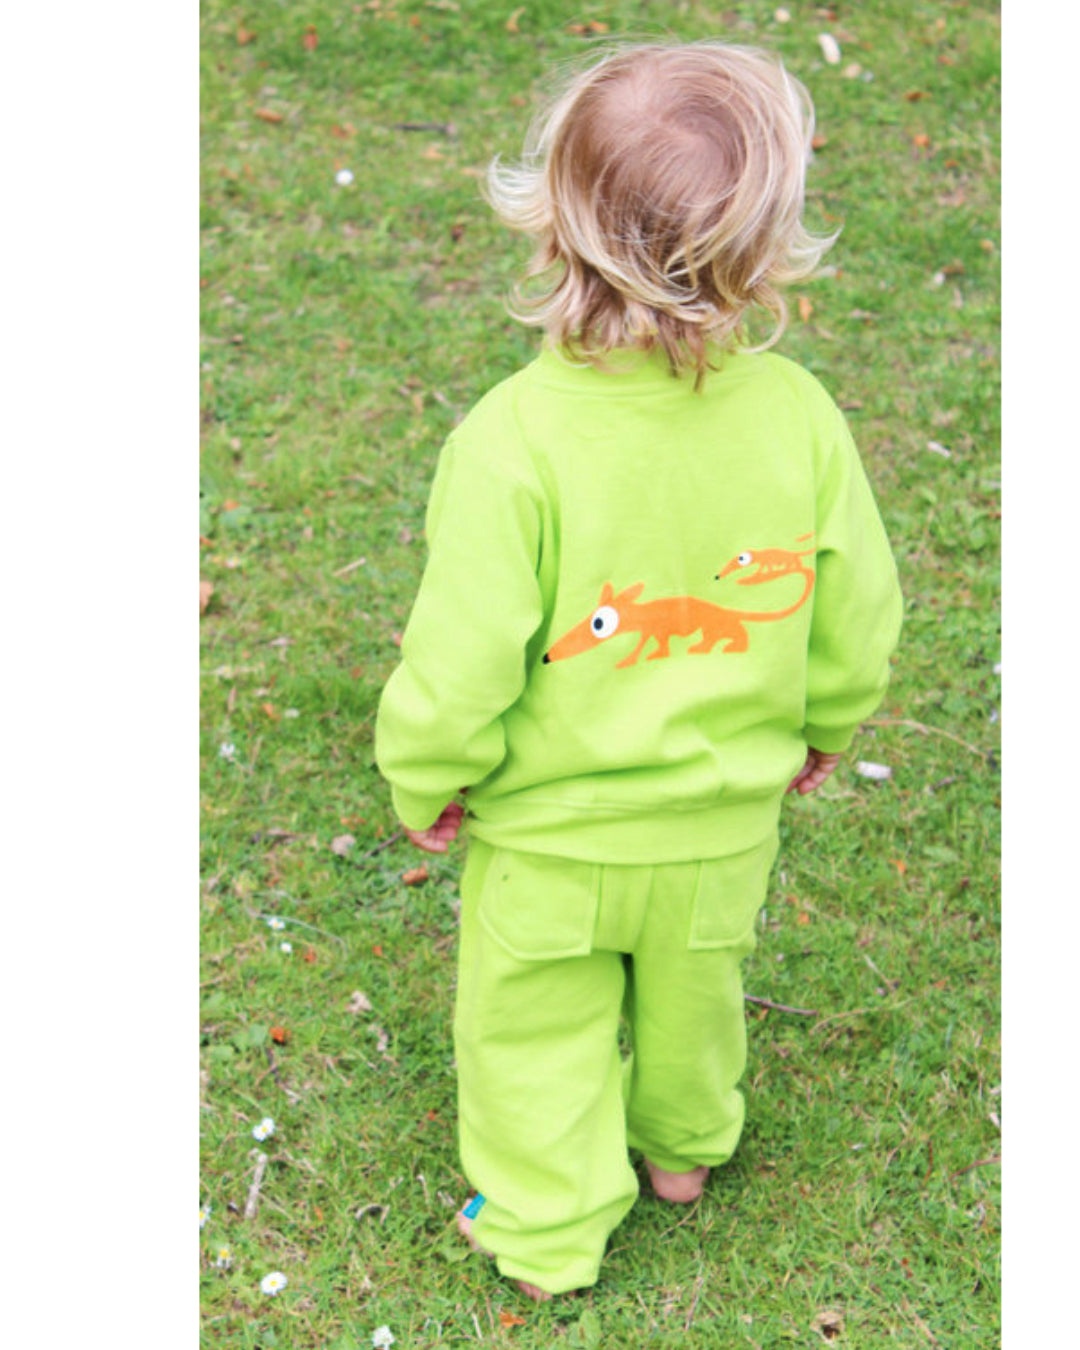 Grüne Jacke mit Reißverschluss und kleinem Dackel Anton in orange